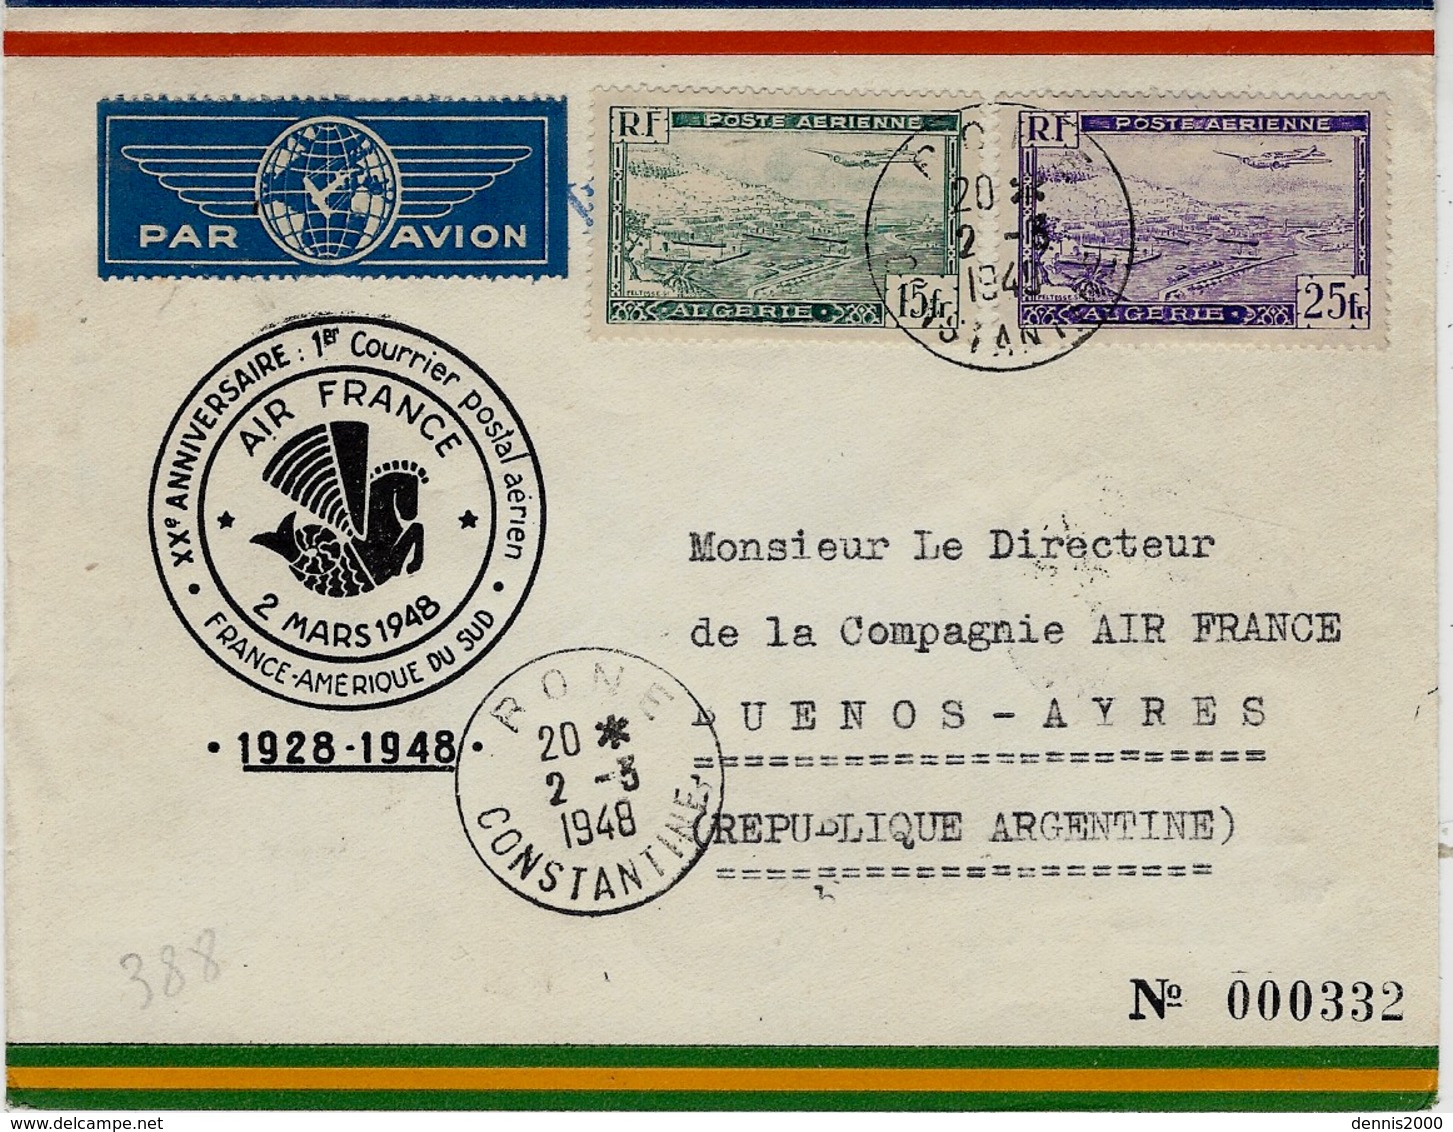 2-3-1948- Xxè Anniversaire : 1er Courrier Postal Aérien France-Amérique Du Sud Par Air-France - Lettres & Documents